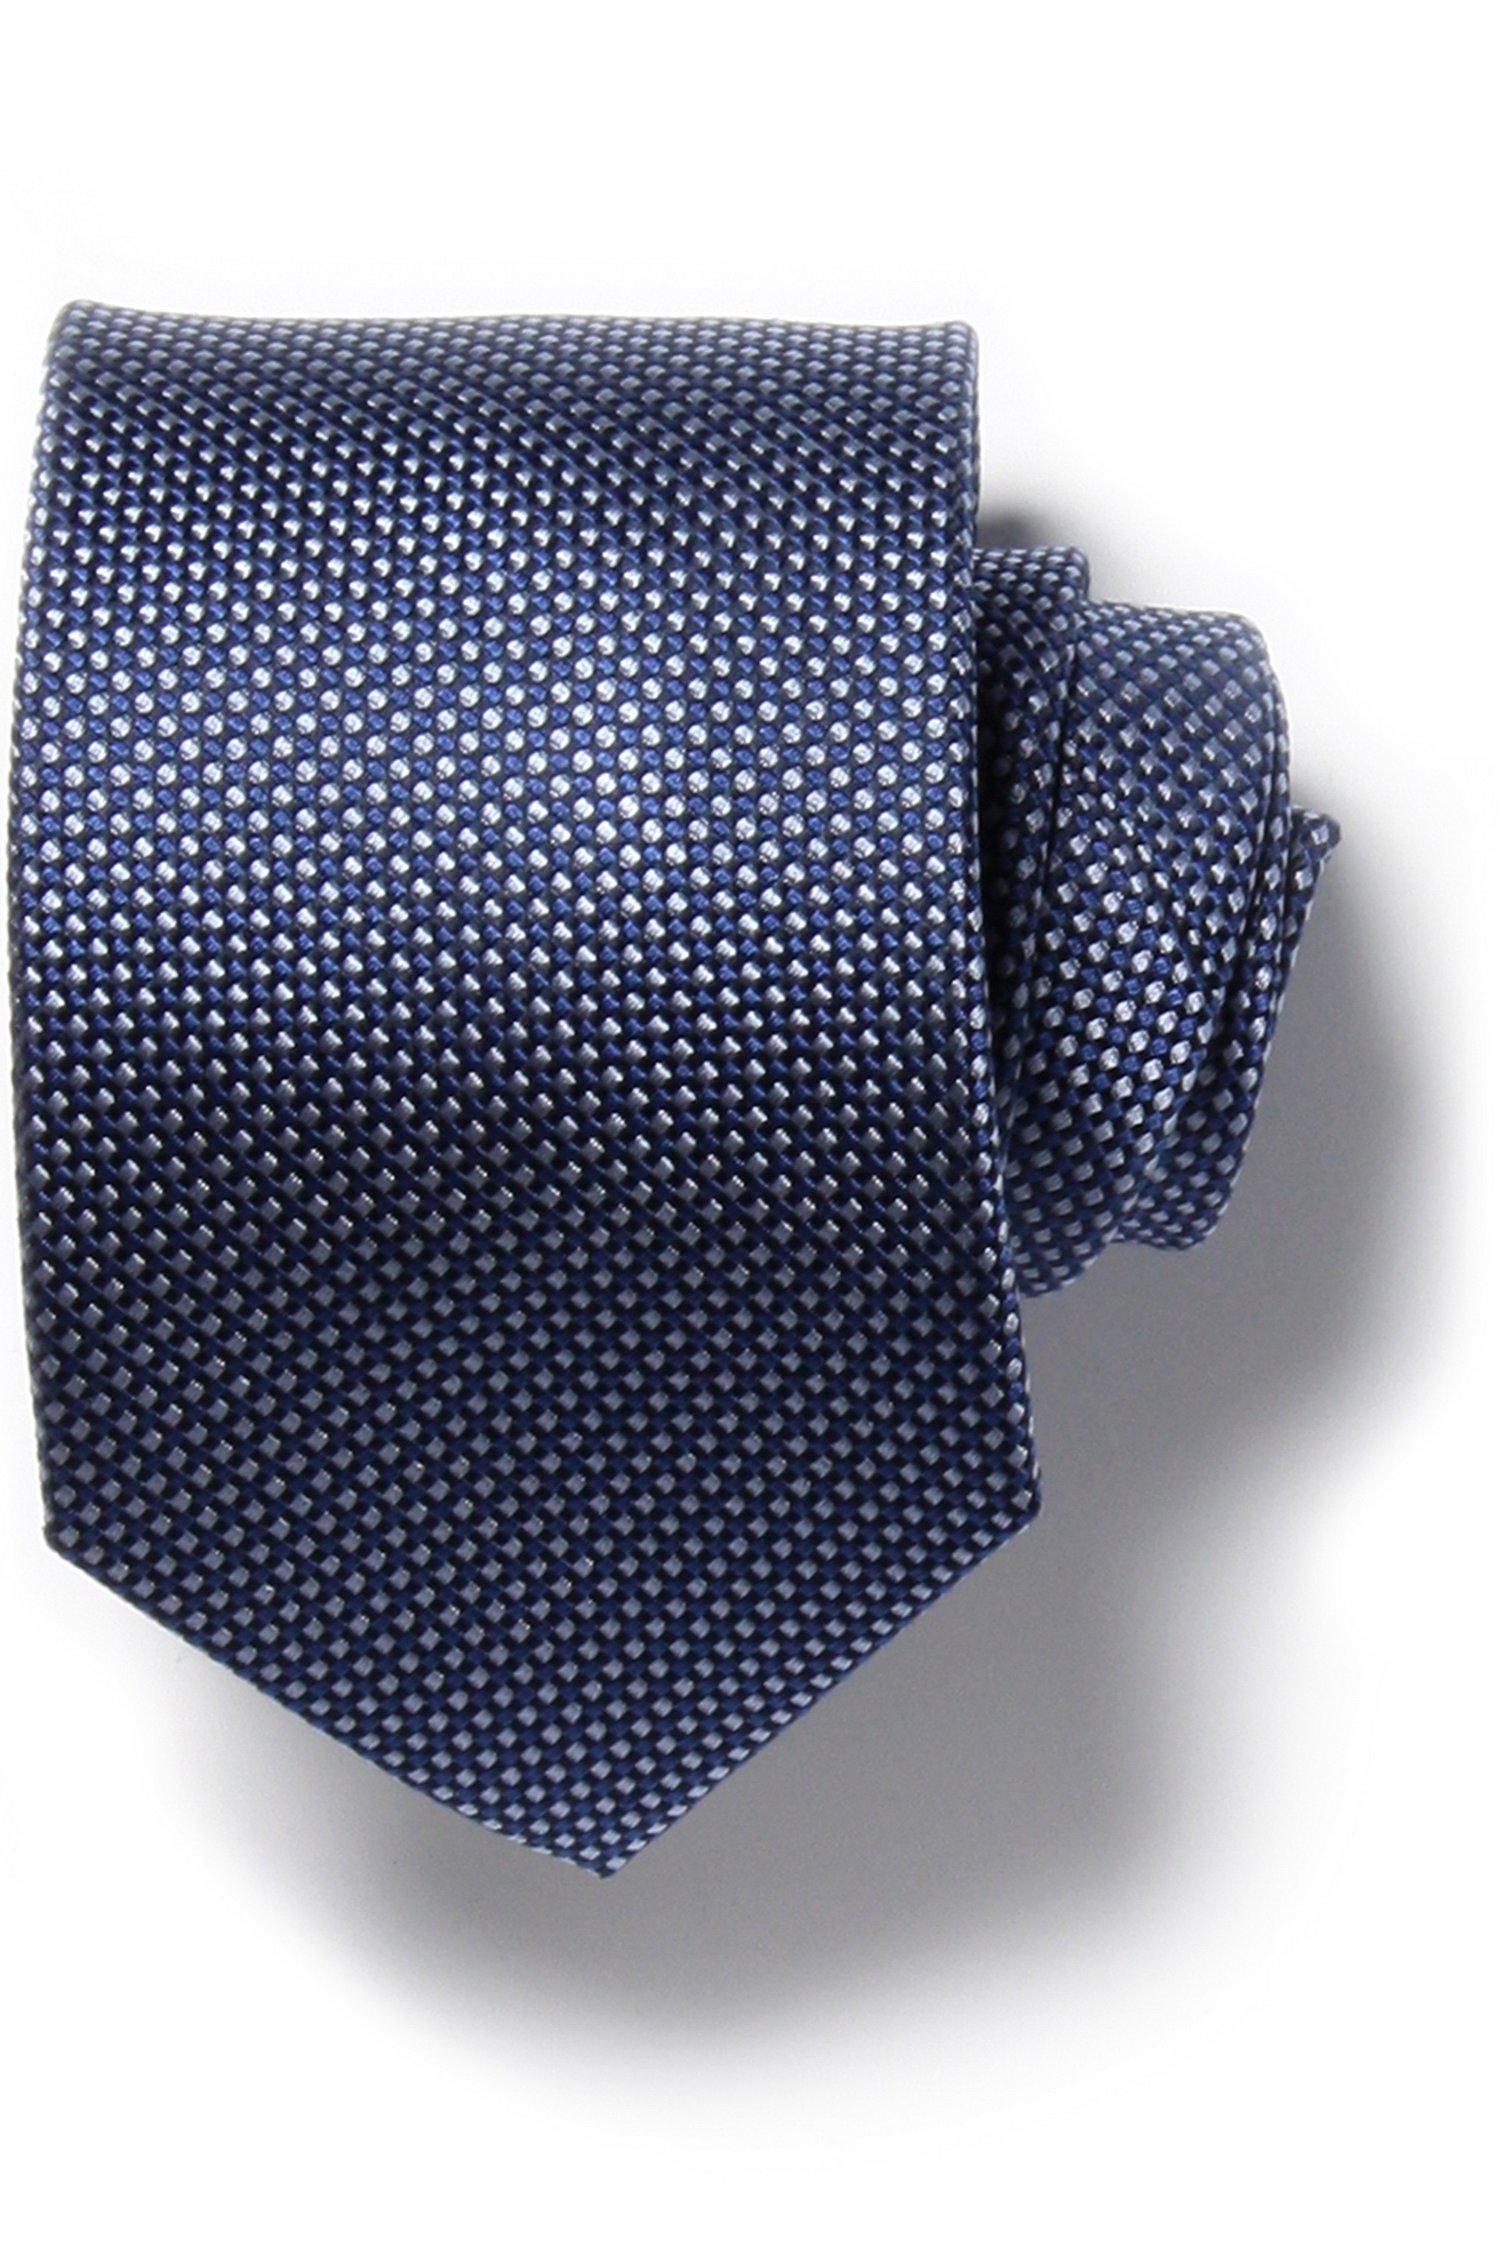 Cravate bleue et grise avec effet tissé de Michaelis pour Hommes